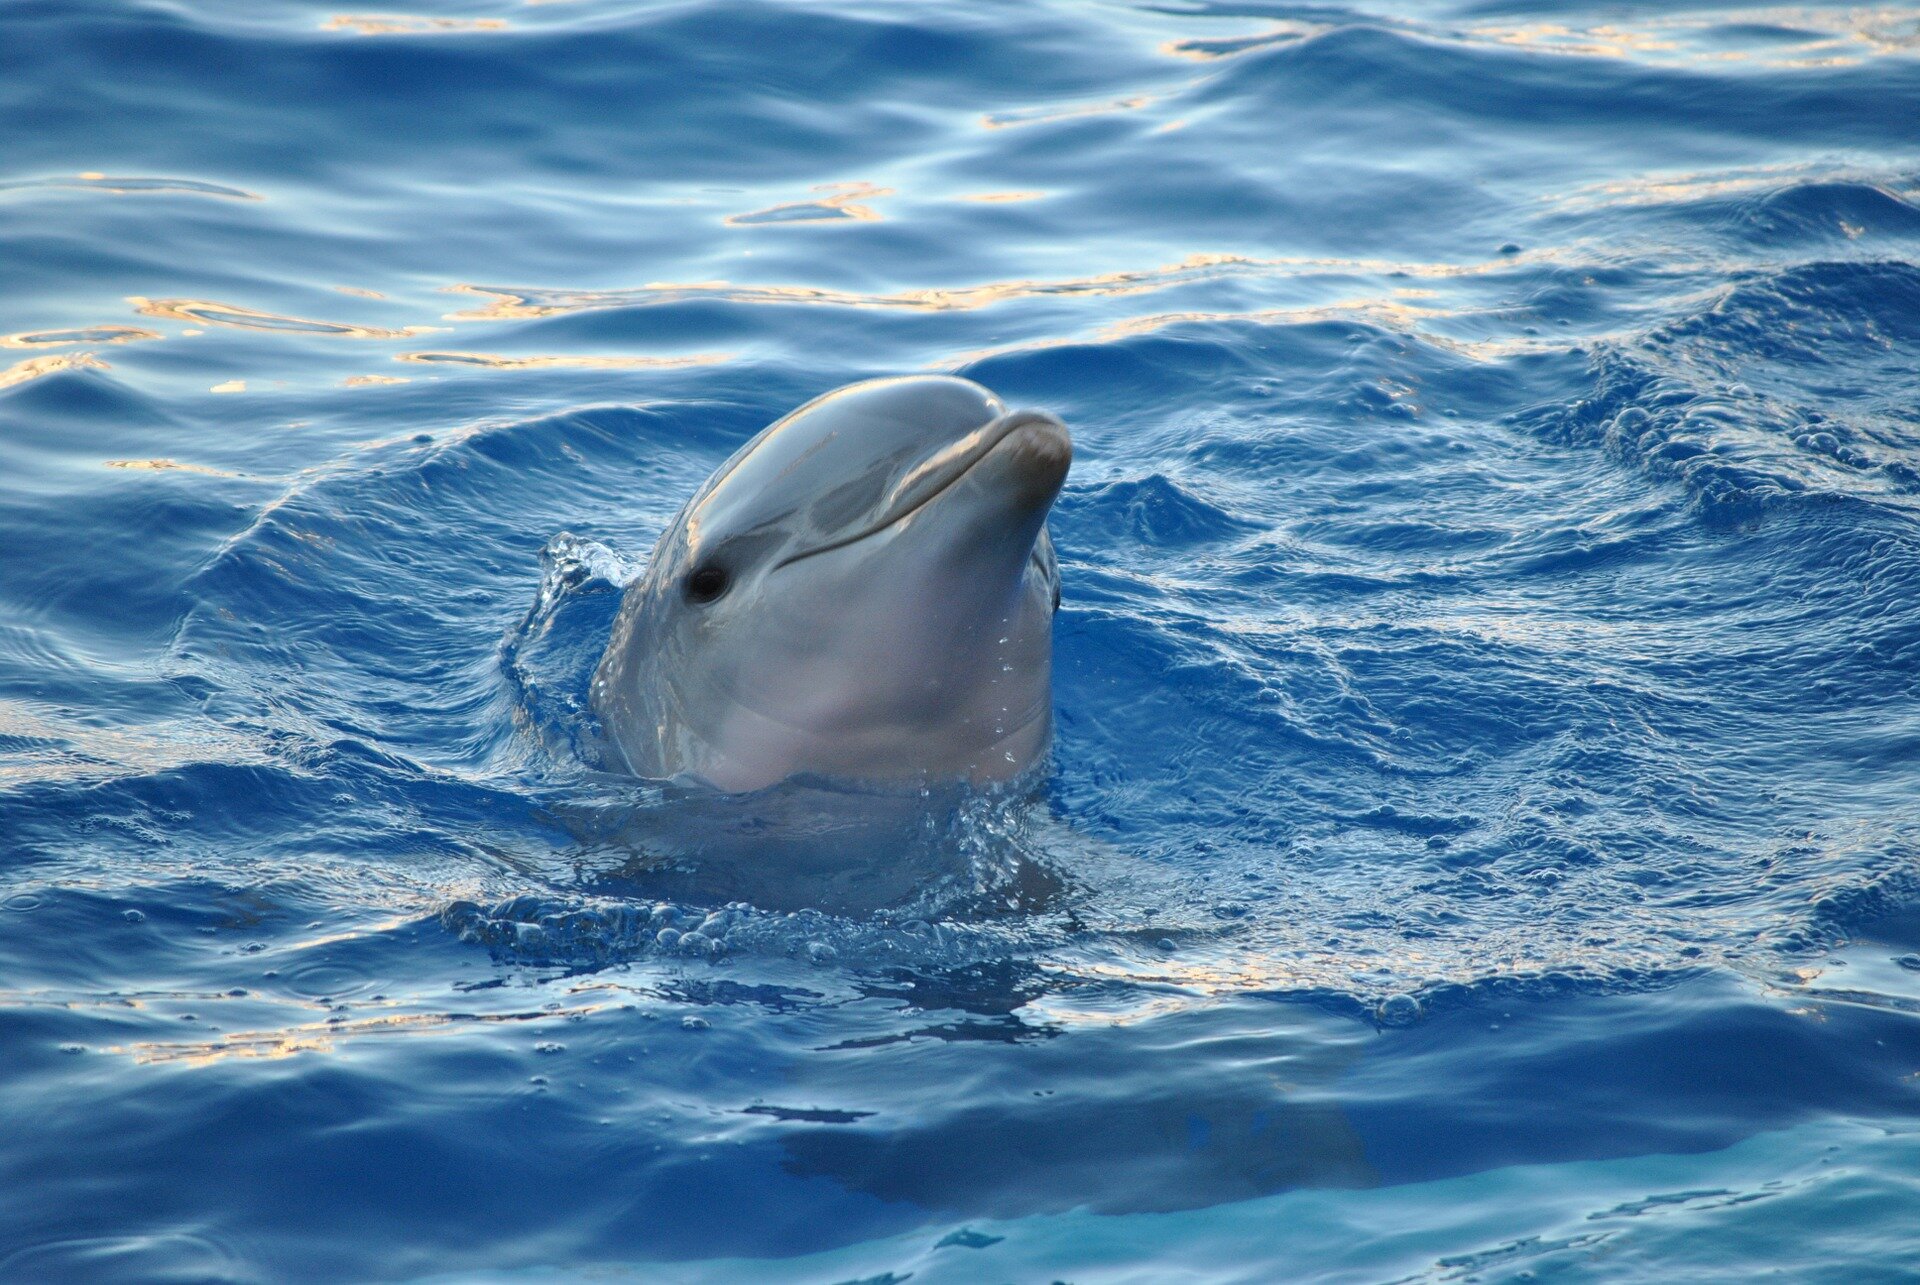 Delfin Delfin Źródło: zoostar, domena publiczna.